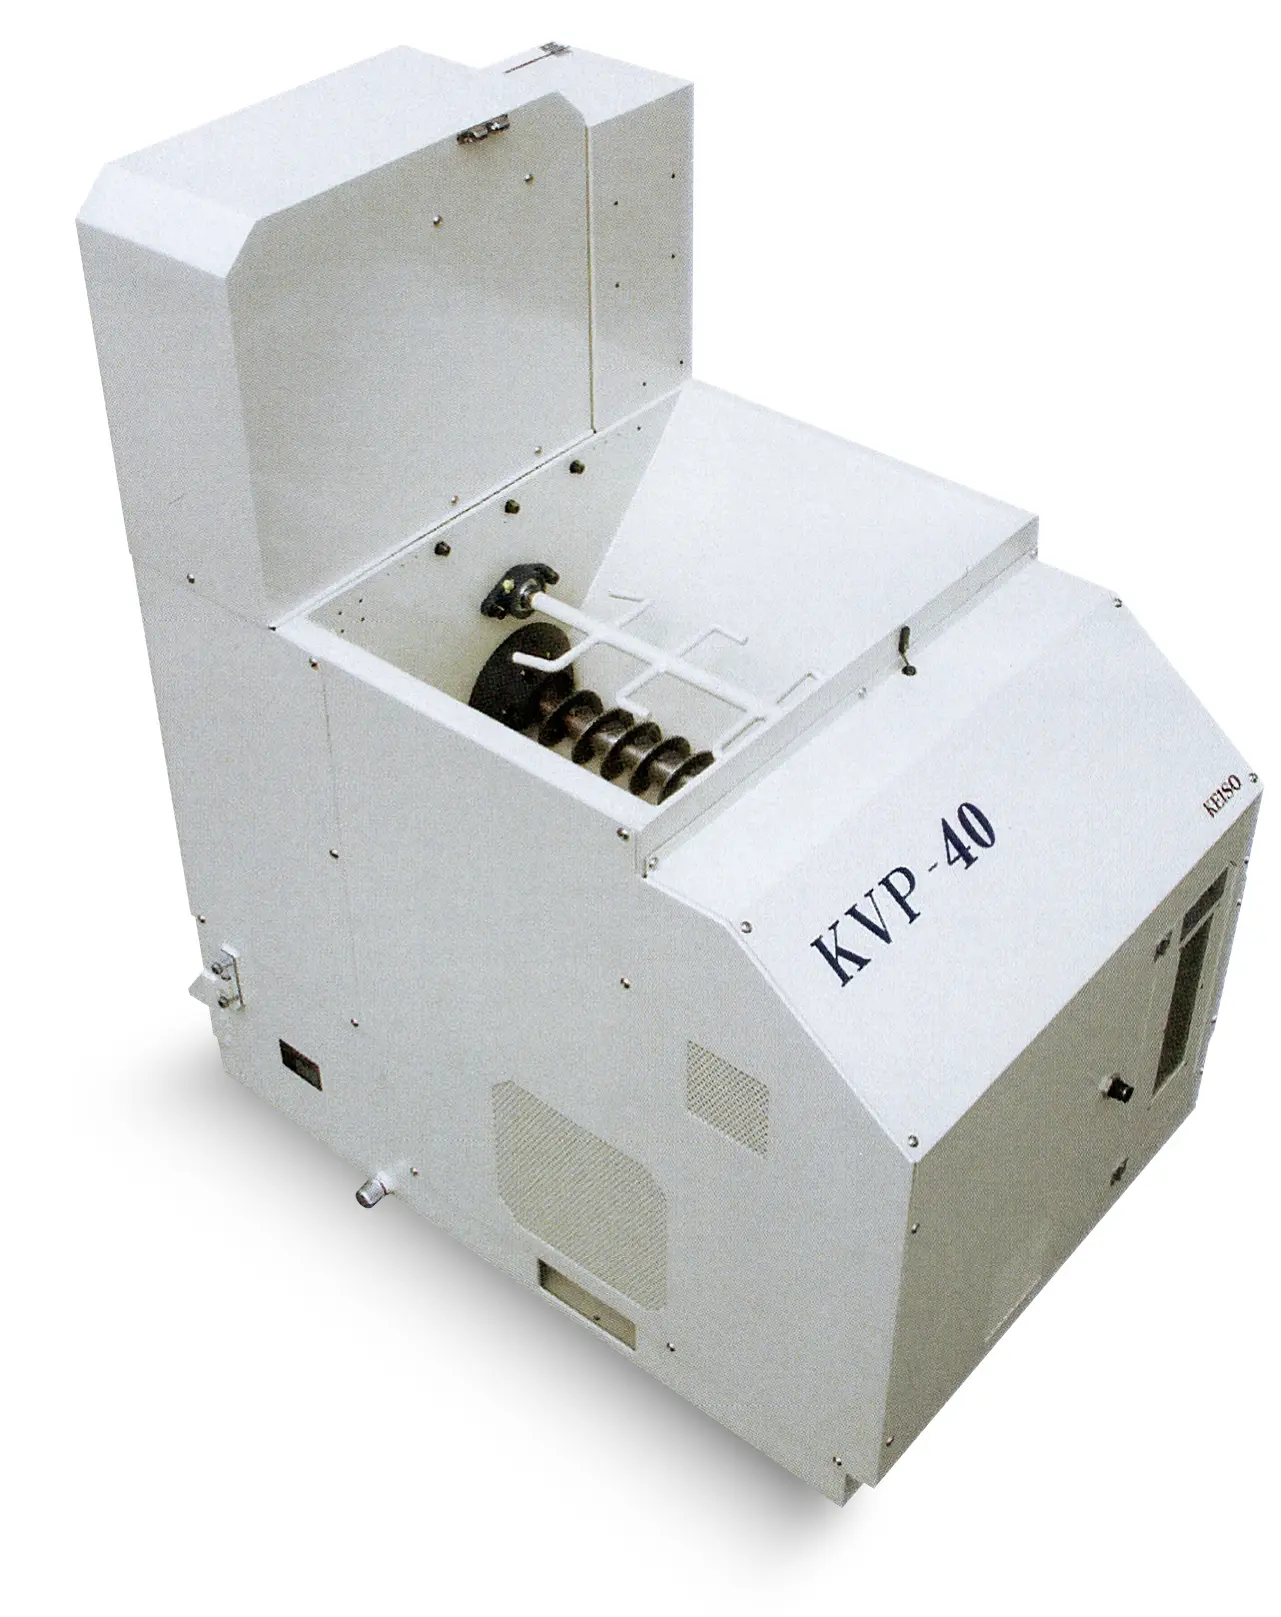 啓装工業の自動切粉圧縮機『KVP-40』のメイン画像です。